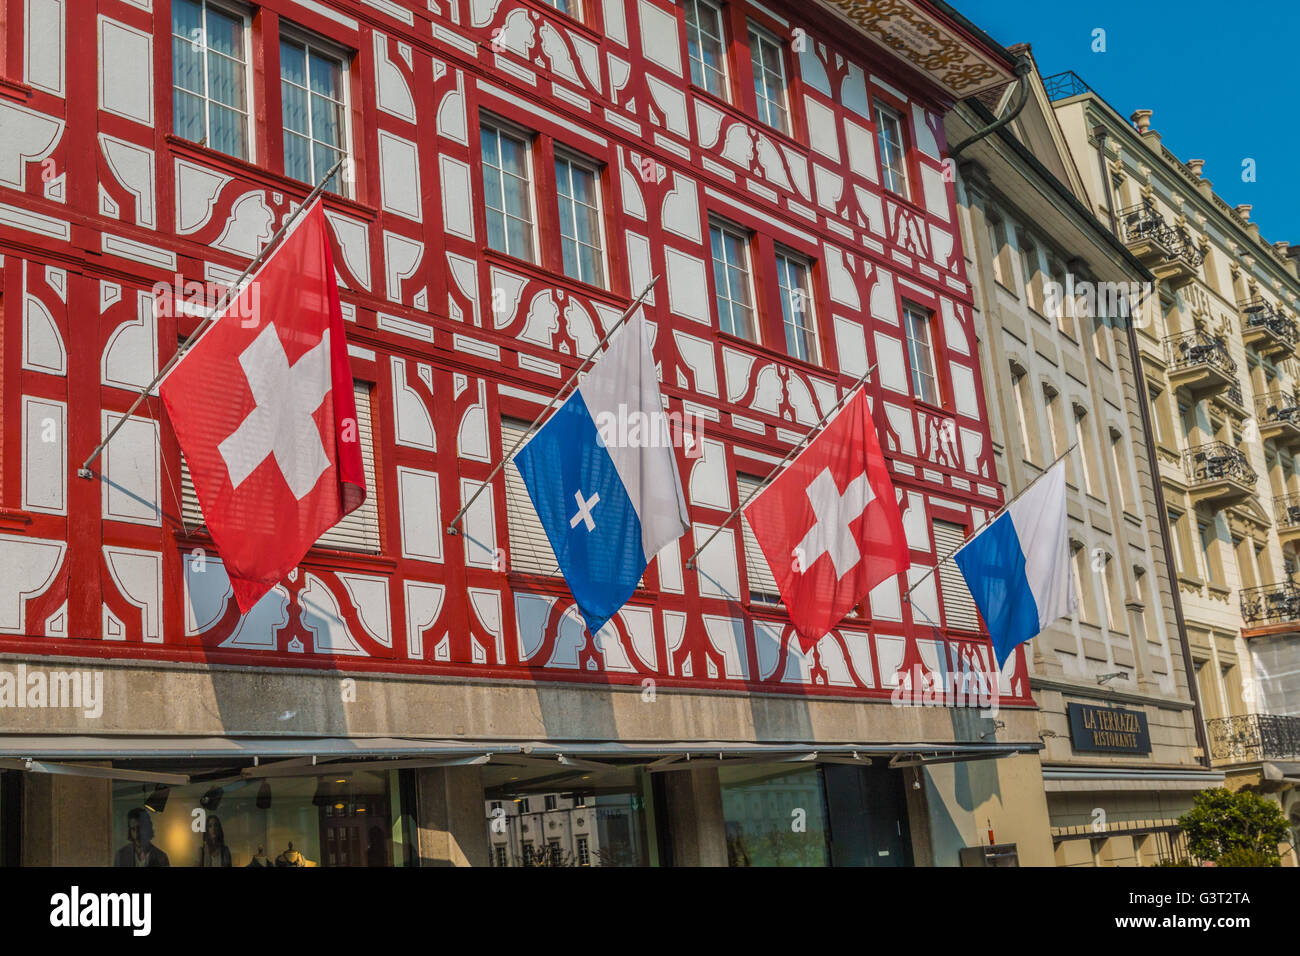 Drapeaux suisses à Lucerne Suisse Banque D'Images